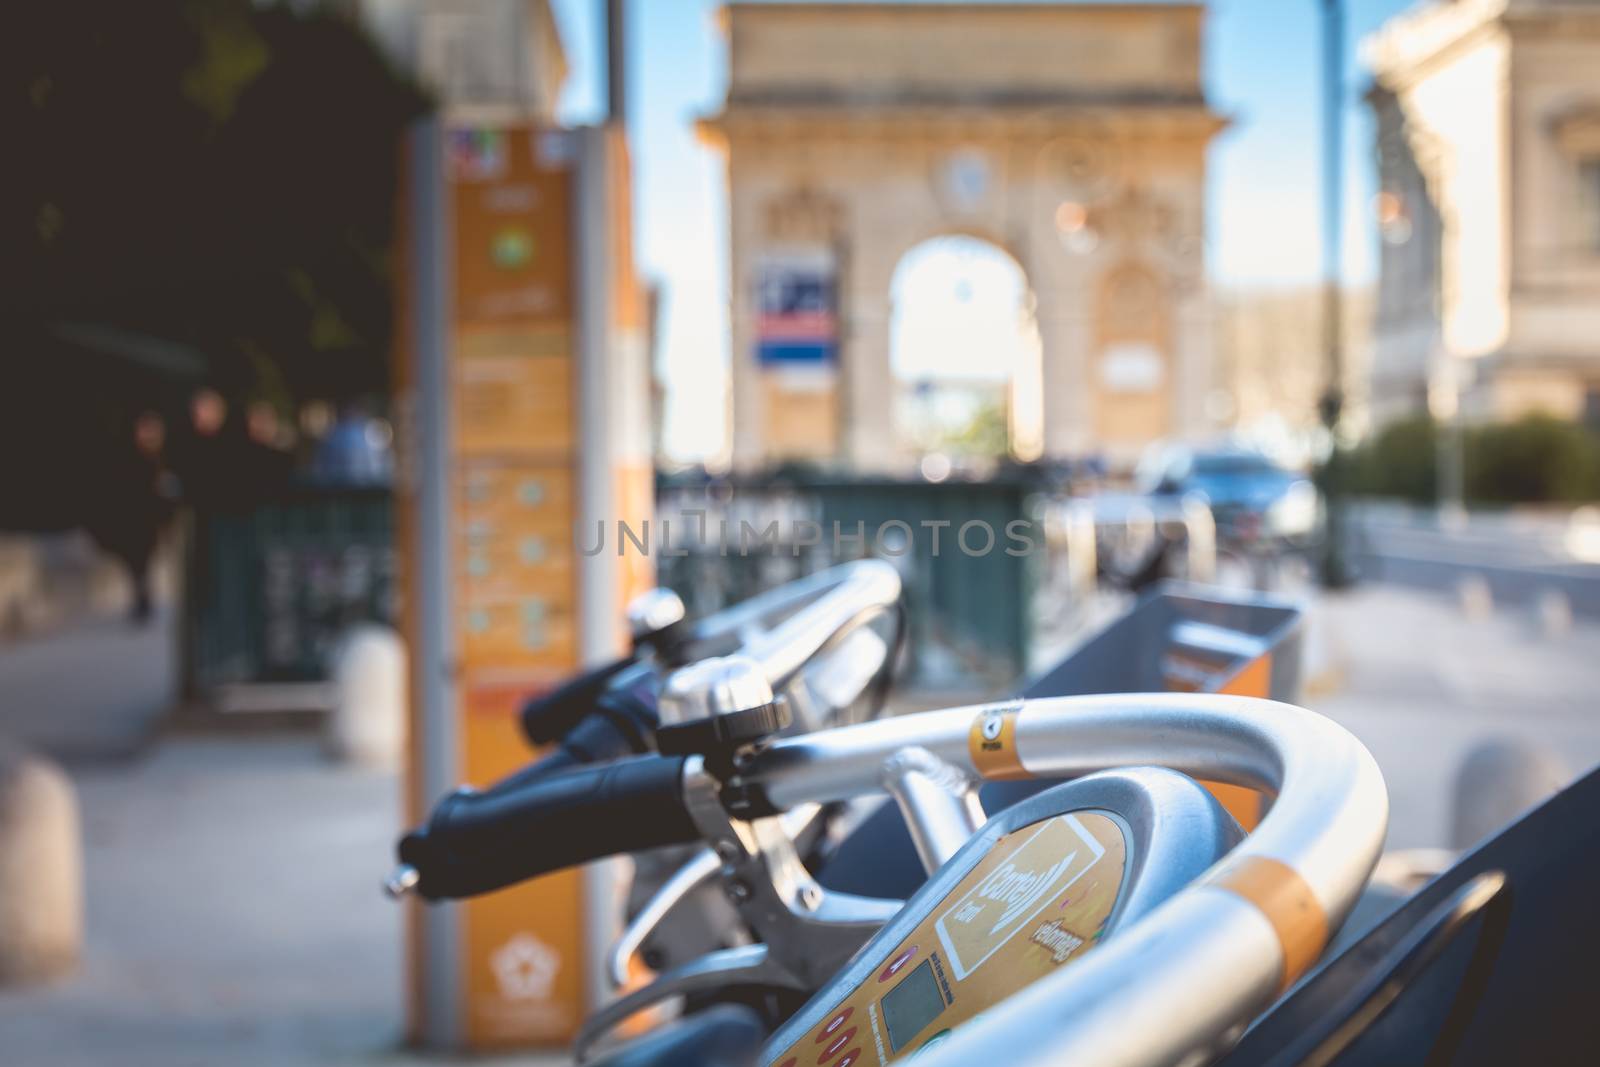 Velomagg bike sharing city bikes for rental in Montpellier by AtlanticEUROSTOXX